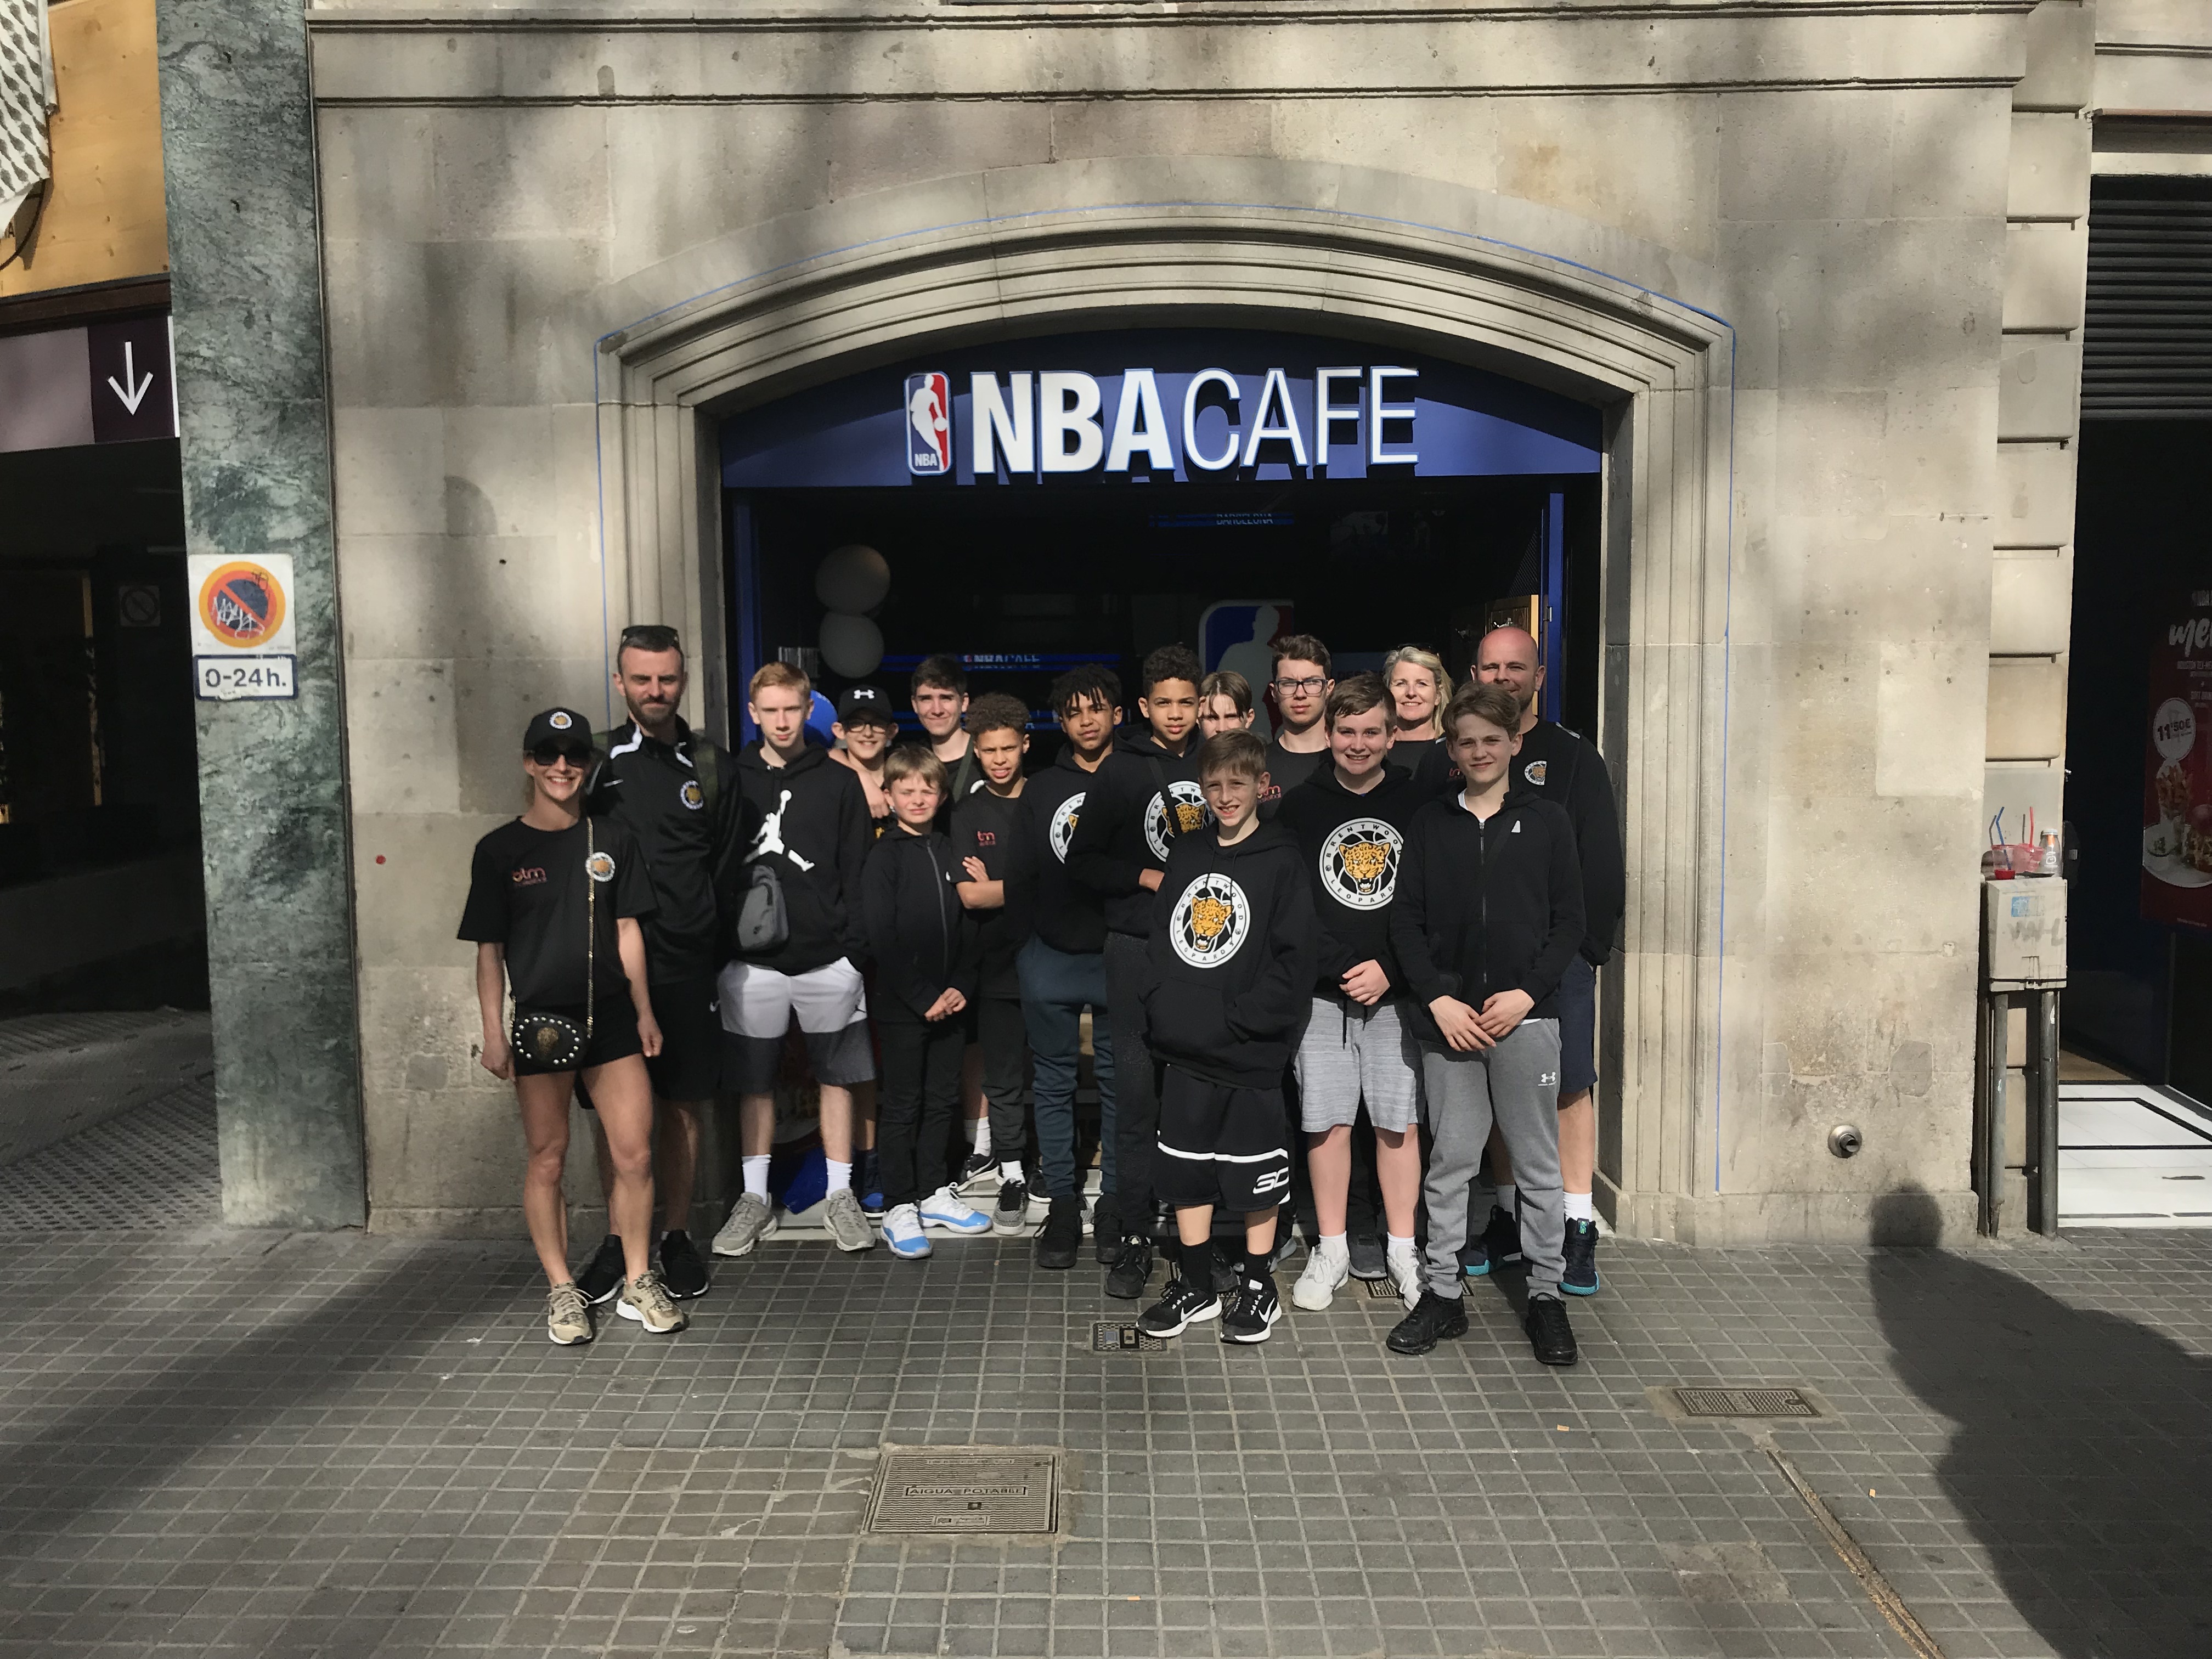 Outside the NBA Cafe